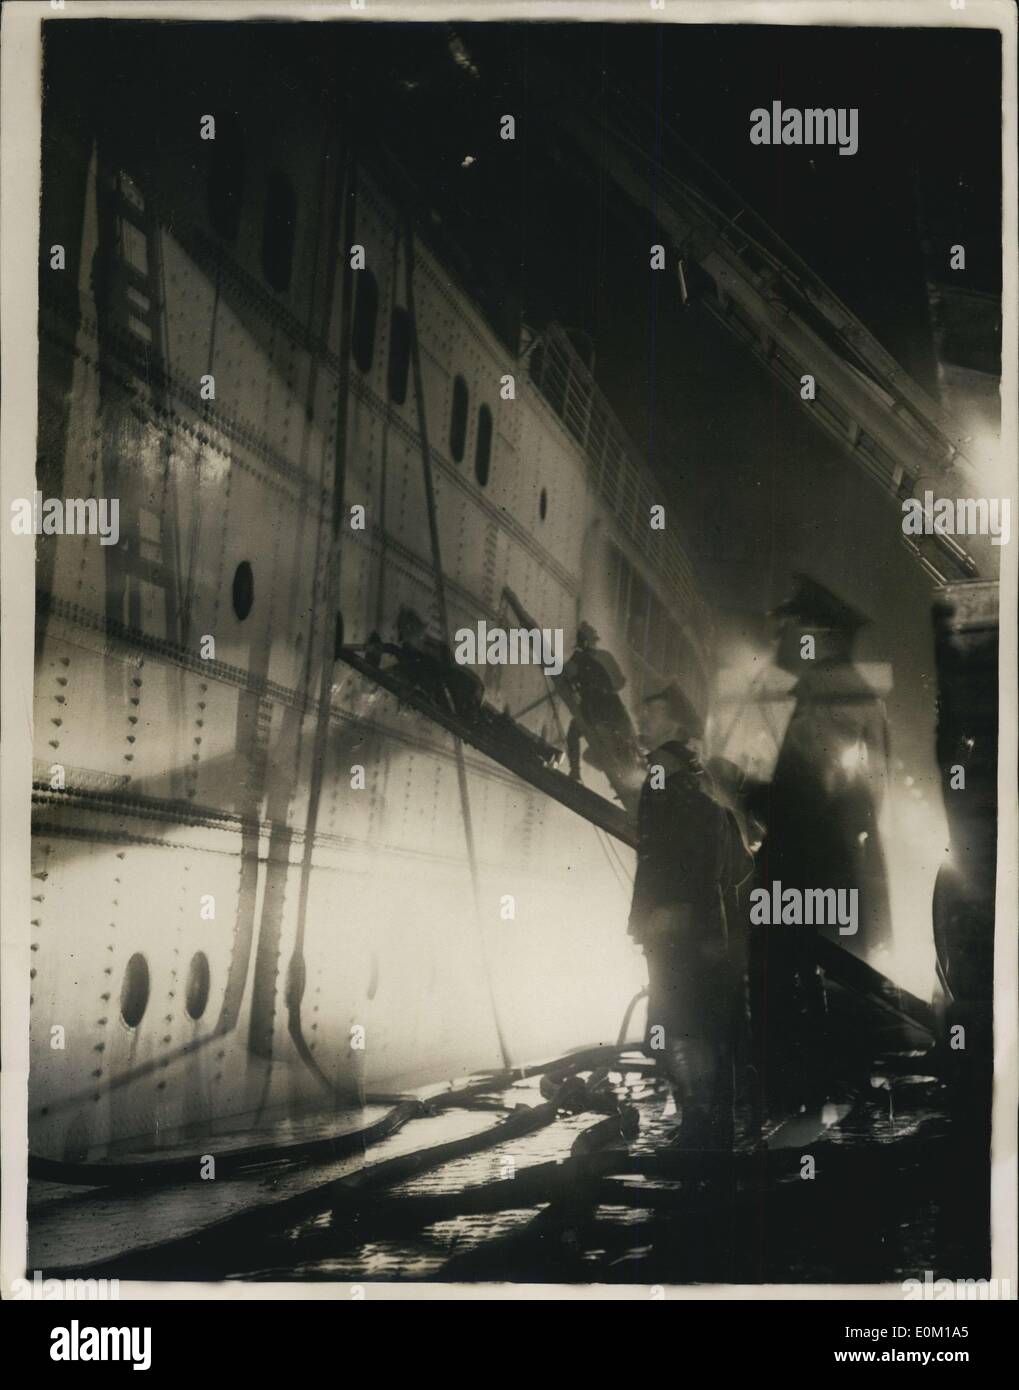 26 janvier 1953 - L'Empress of Canada Burnt Out-chavire à Liverpool Dock : photo montre la scène comme pompier et lutter contre les responsables de l'incendie qui a brûlé et a provoqué le chavirement du paquebot Empress of Canada à Liverpool Dock. Banque D'Images